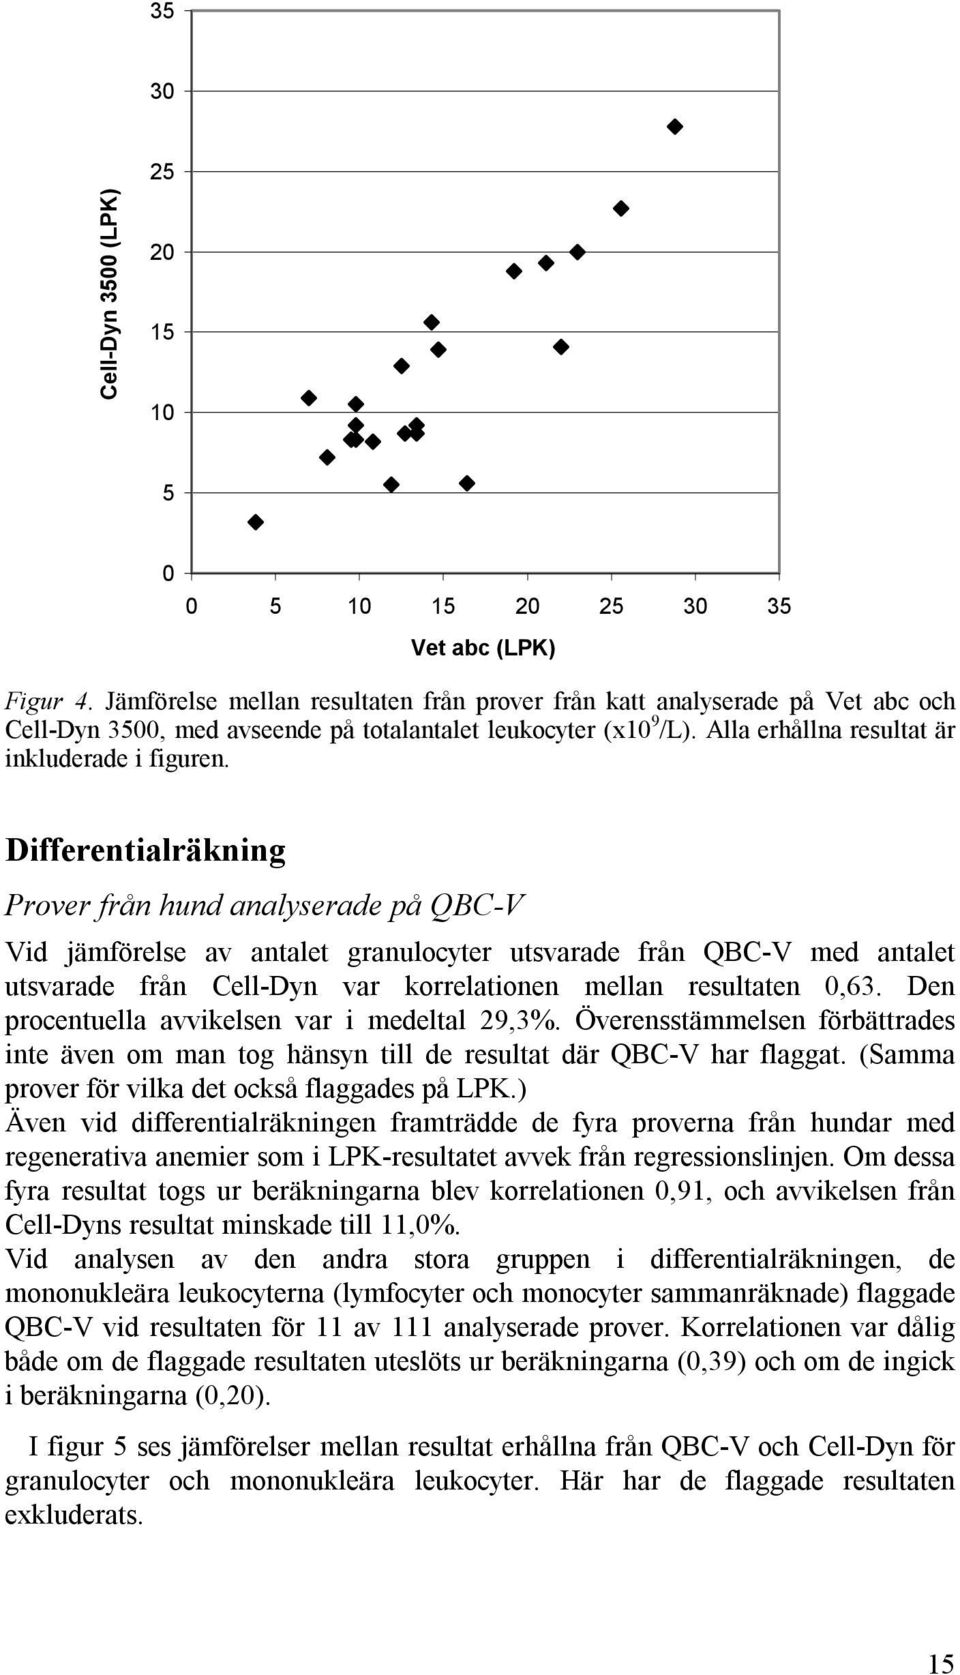 Differentialräkning Prover från hund analyserade på QBC-V Vid jämförelse av antalet granulocyter utsvarade från QBC-V med antalet utsvarade från Cell-Dyn var korrelationen mellan resultaten 0,63.